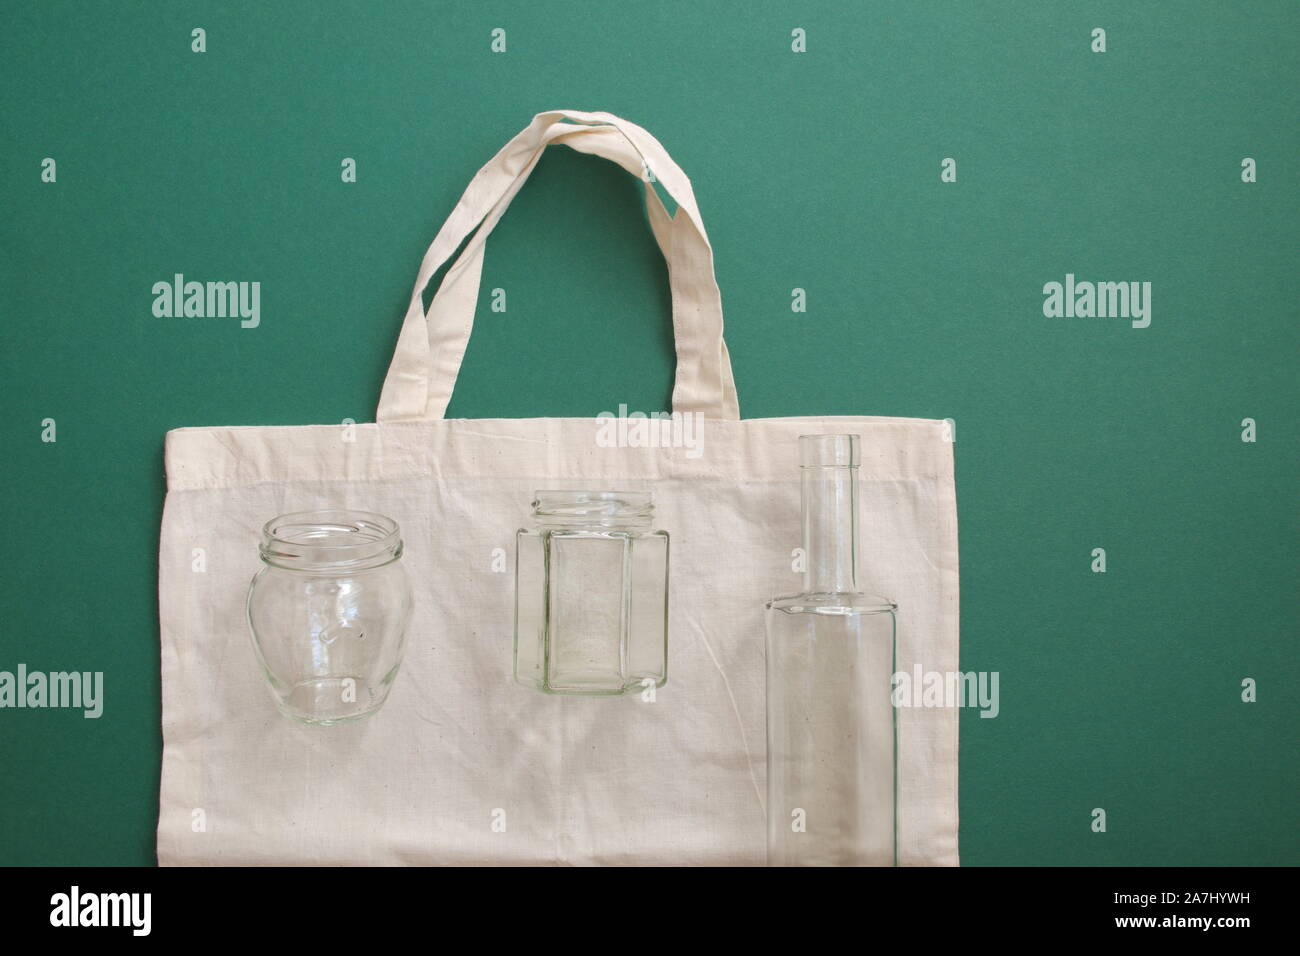 Bolsa de compras reutilizable y botellas de vidrio reutilizable contra el fondo verde Foto de stock